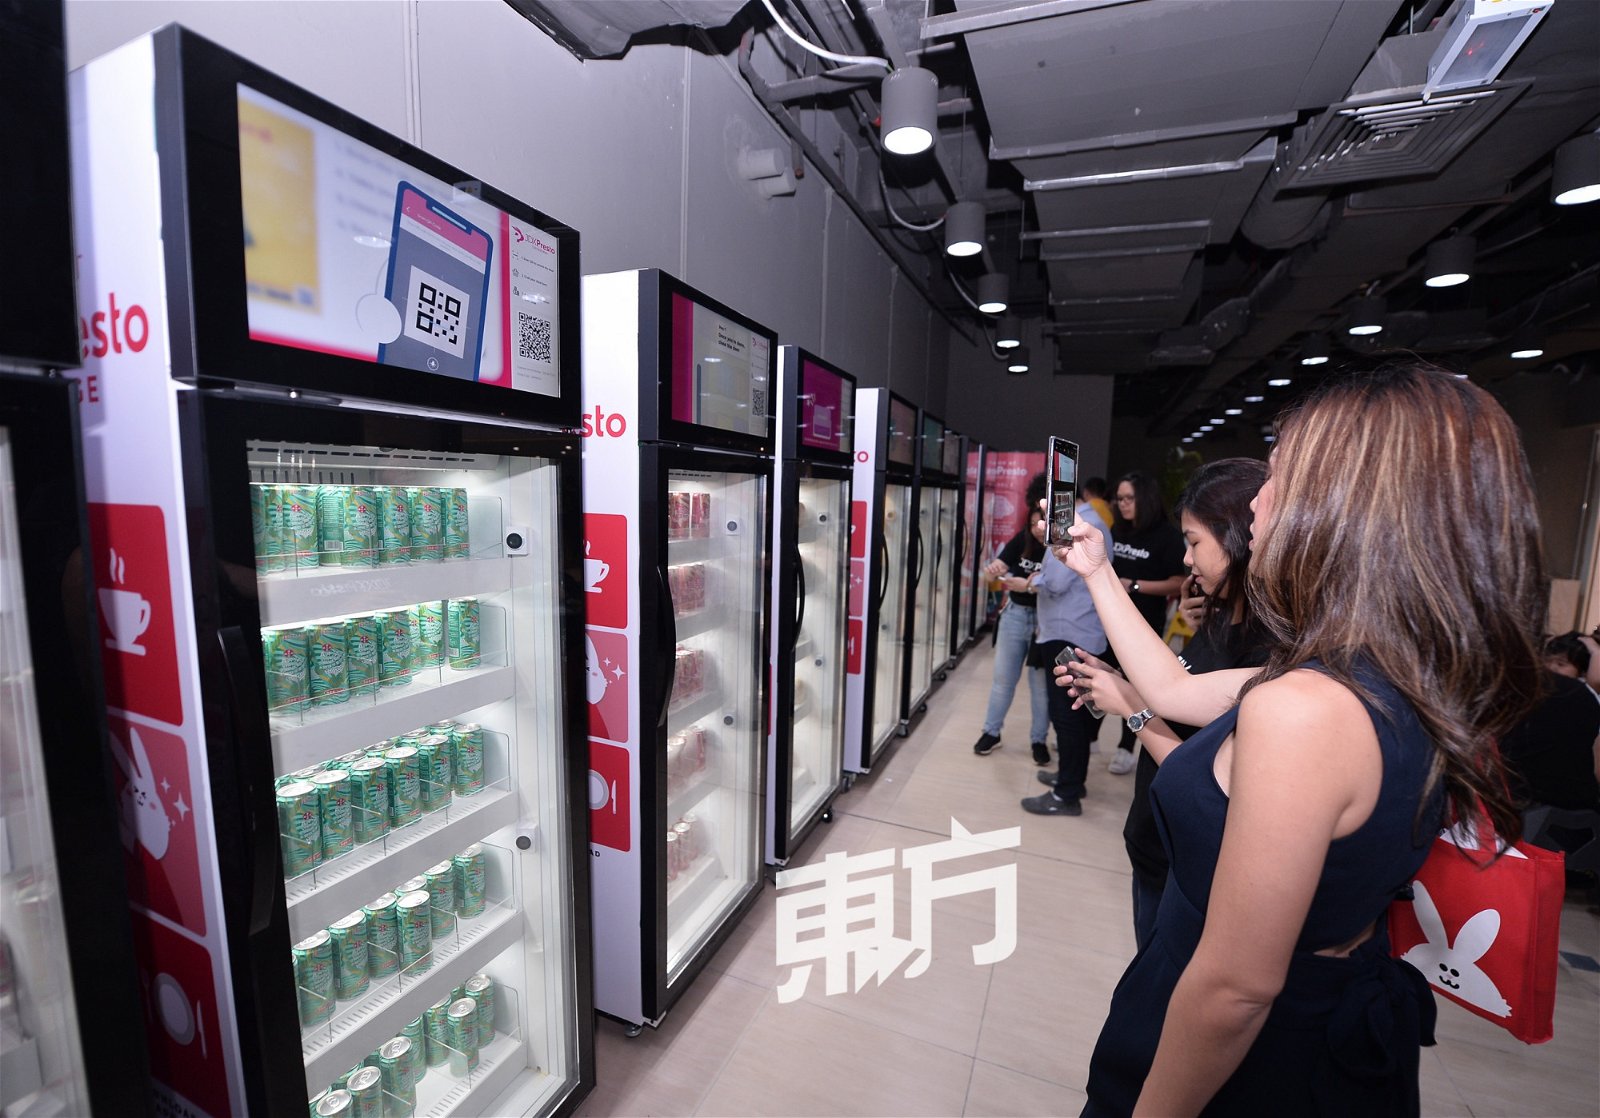 京东概念店则设有无人智能冰箱，消费者只需透过电子钱包Presto扫描冰箱上的二维码即可打开冰箱挑选食品，门关上后系统便会自动扣除需要缴付的款项。